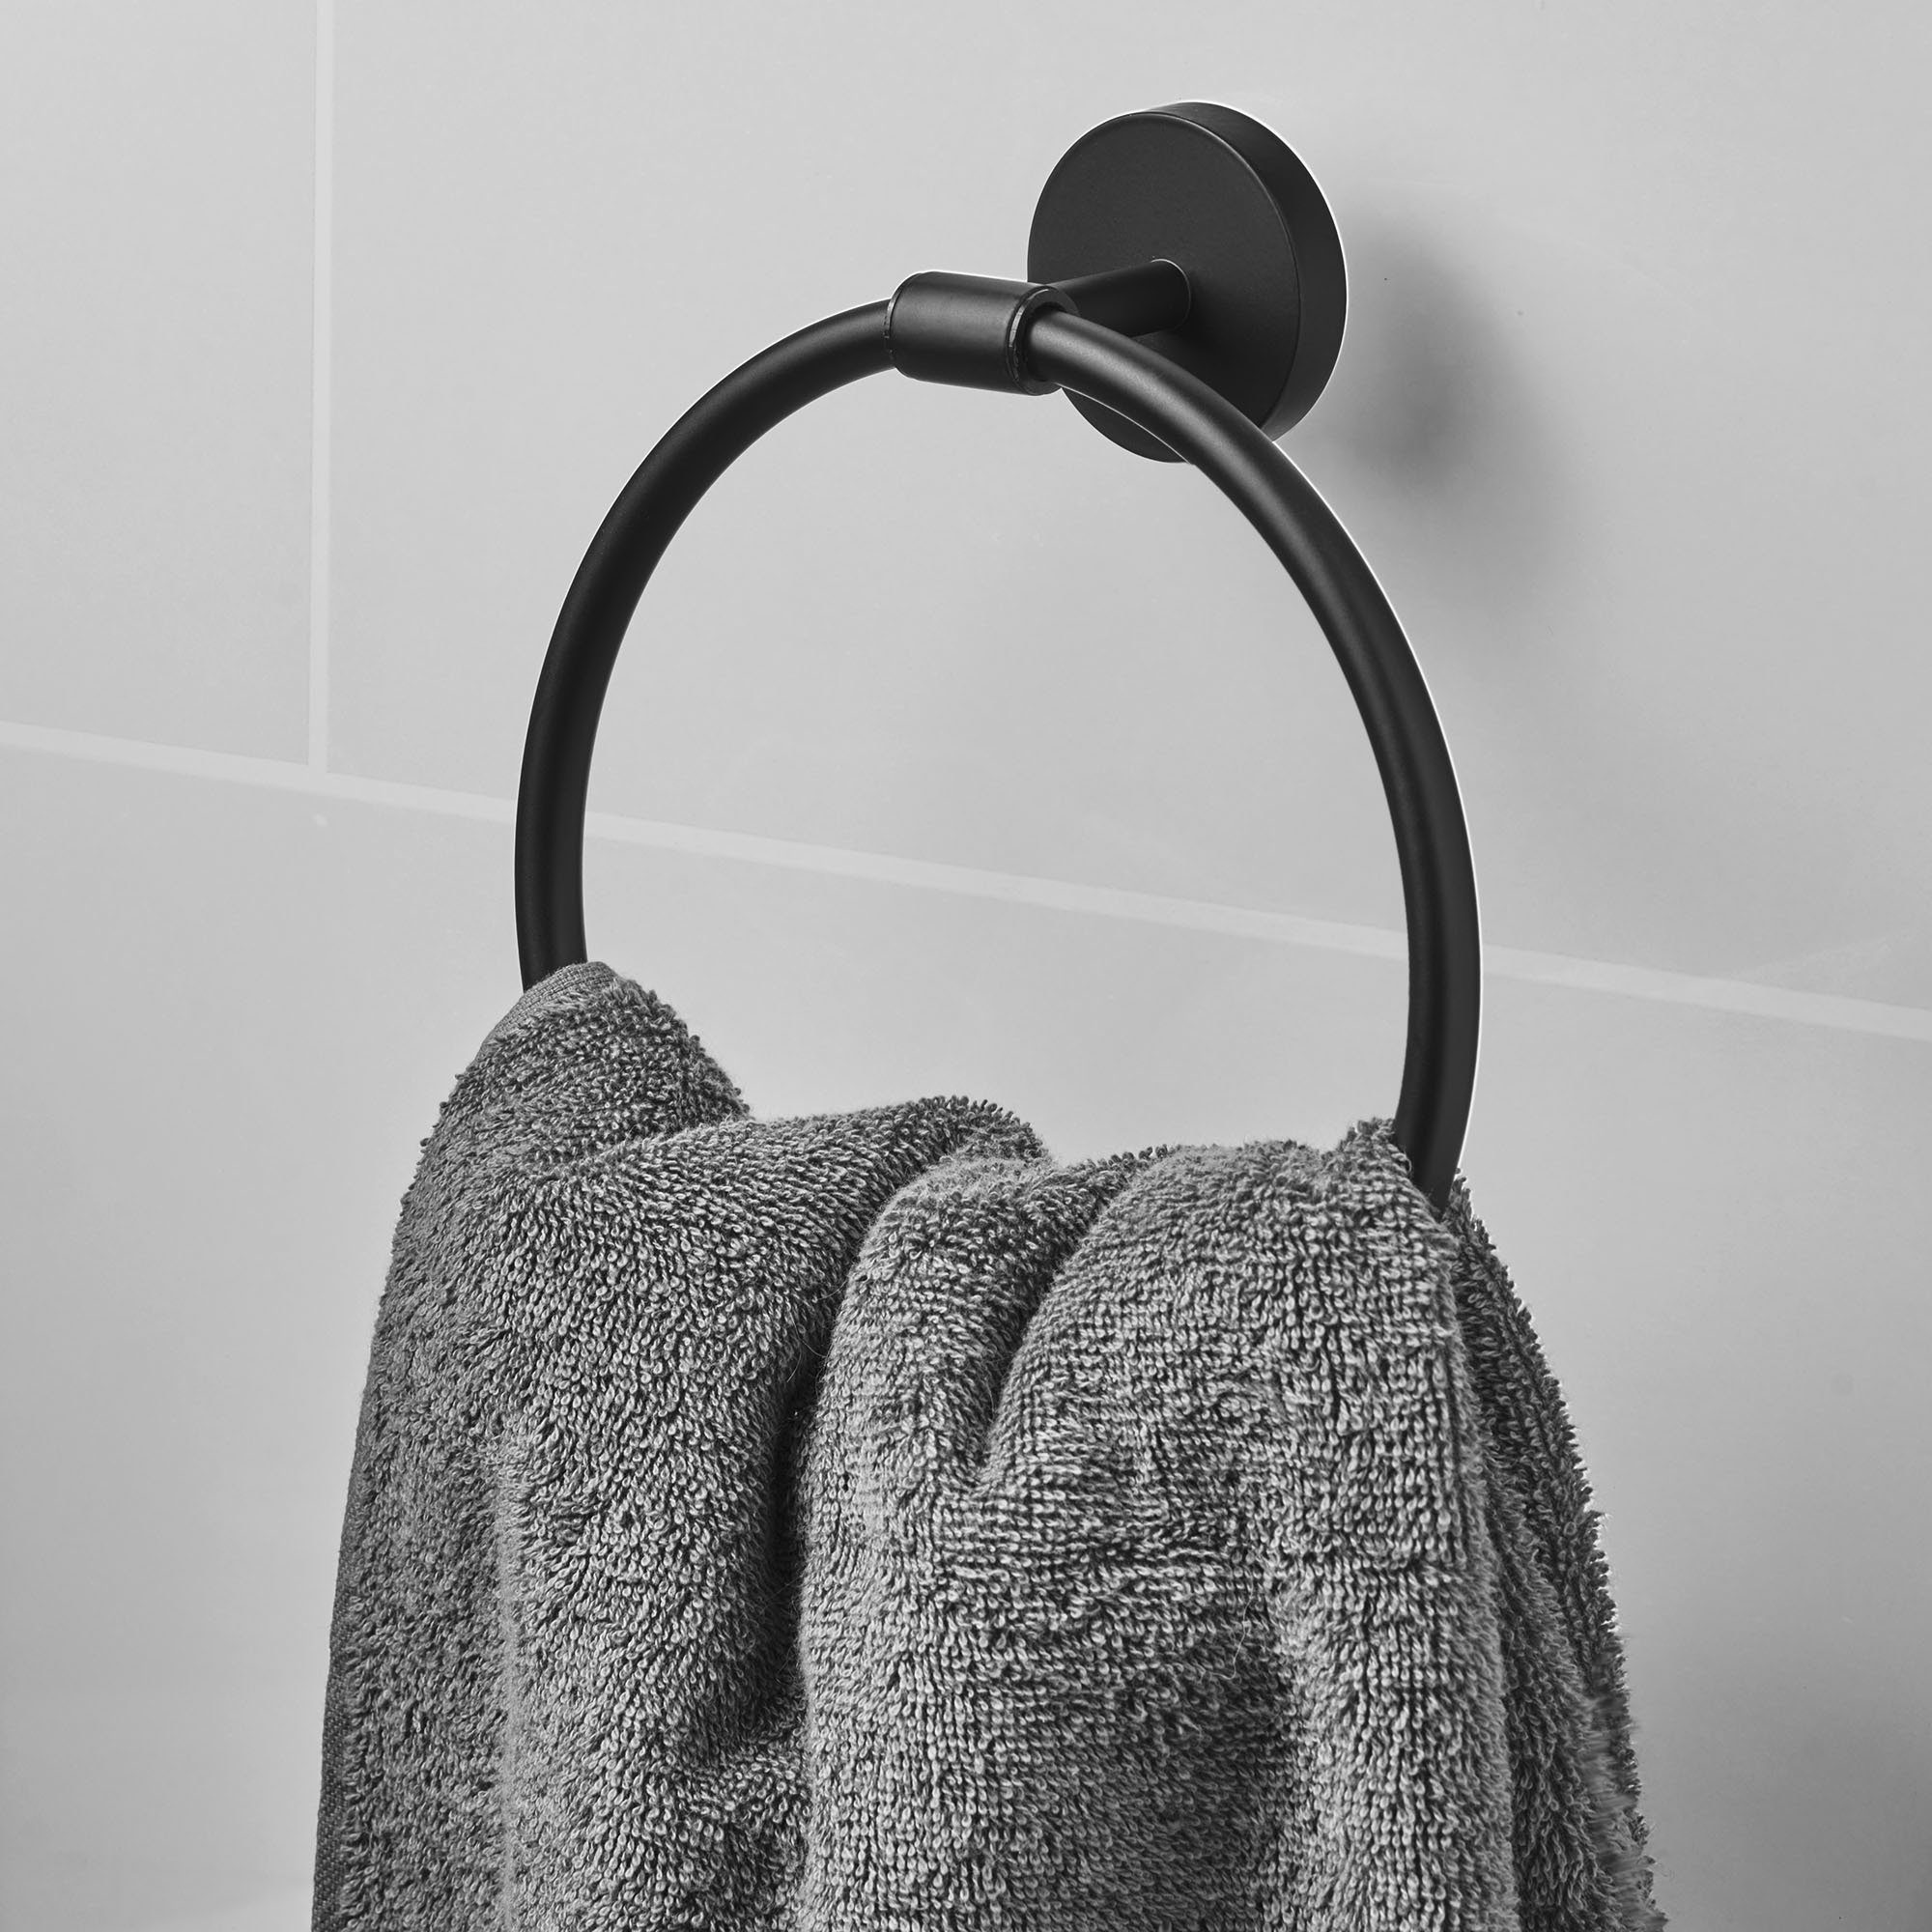 Handtuchring Bath Handtuchhalter Luxus Schwarz Handtuchring Amare